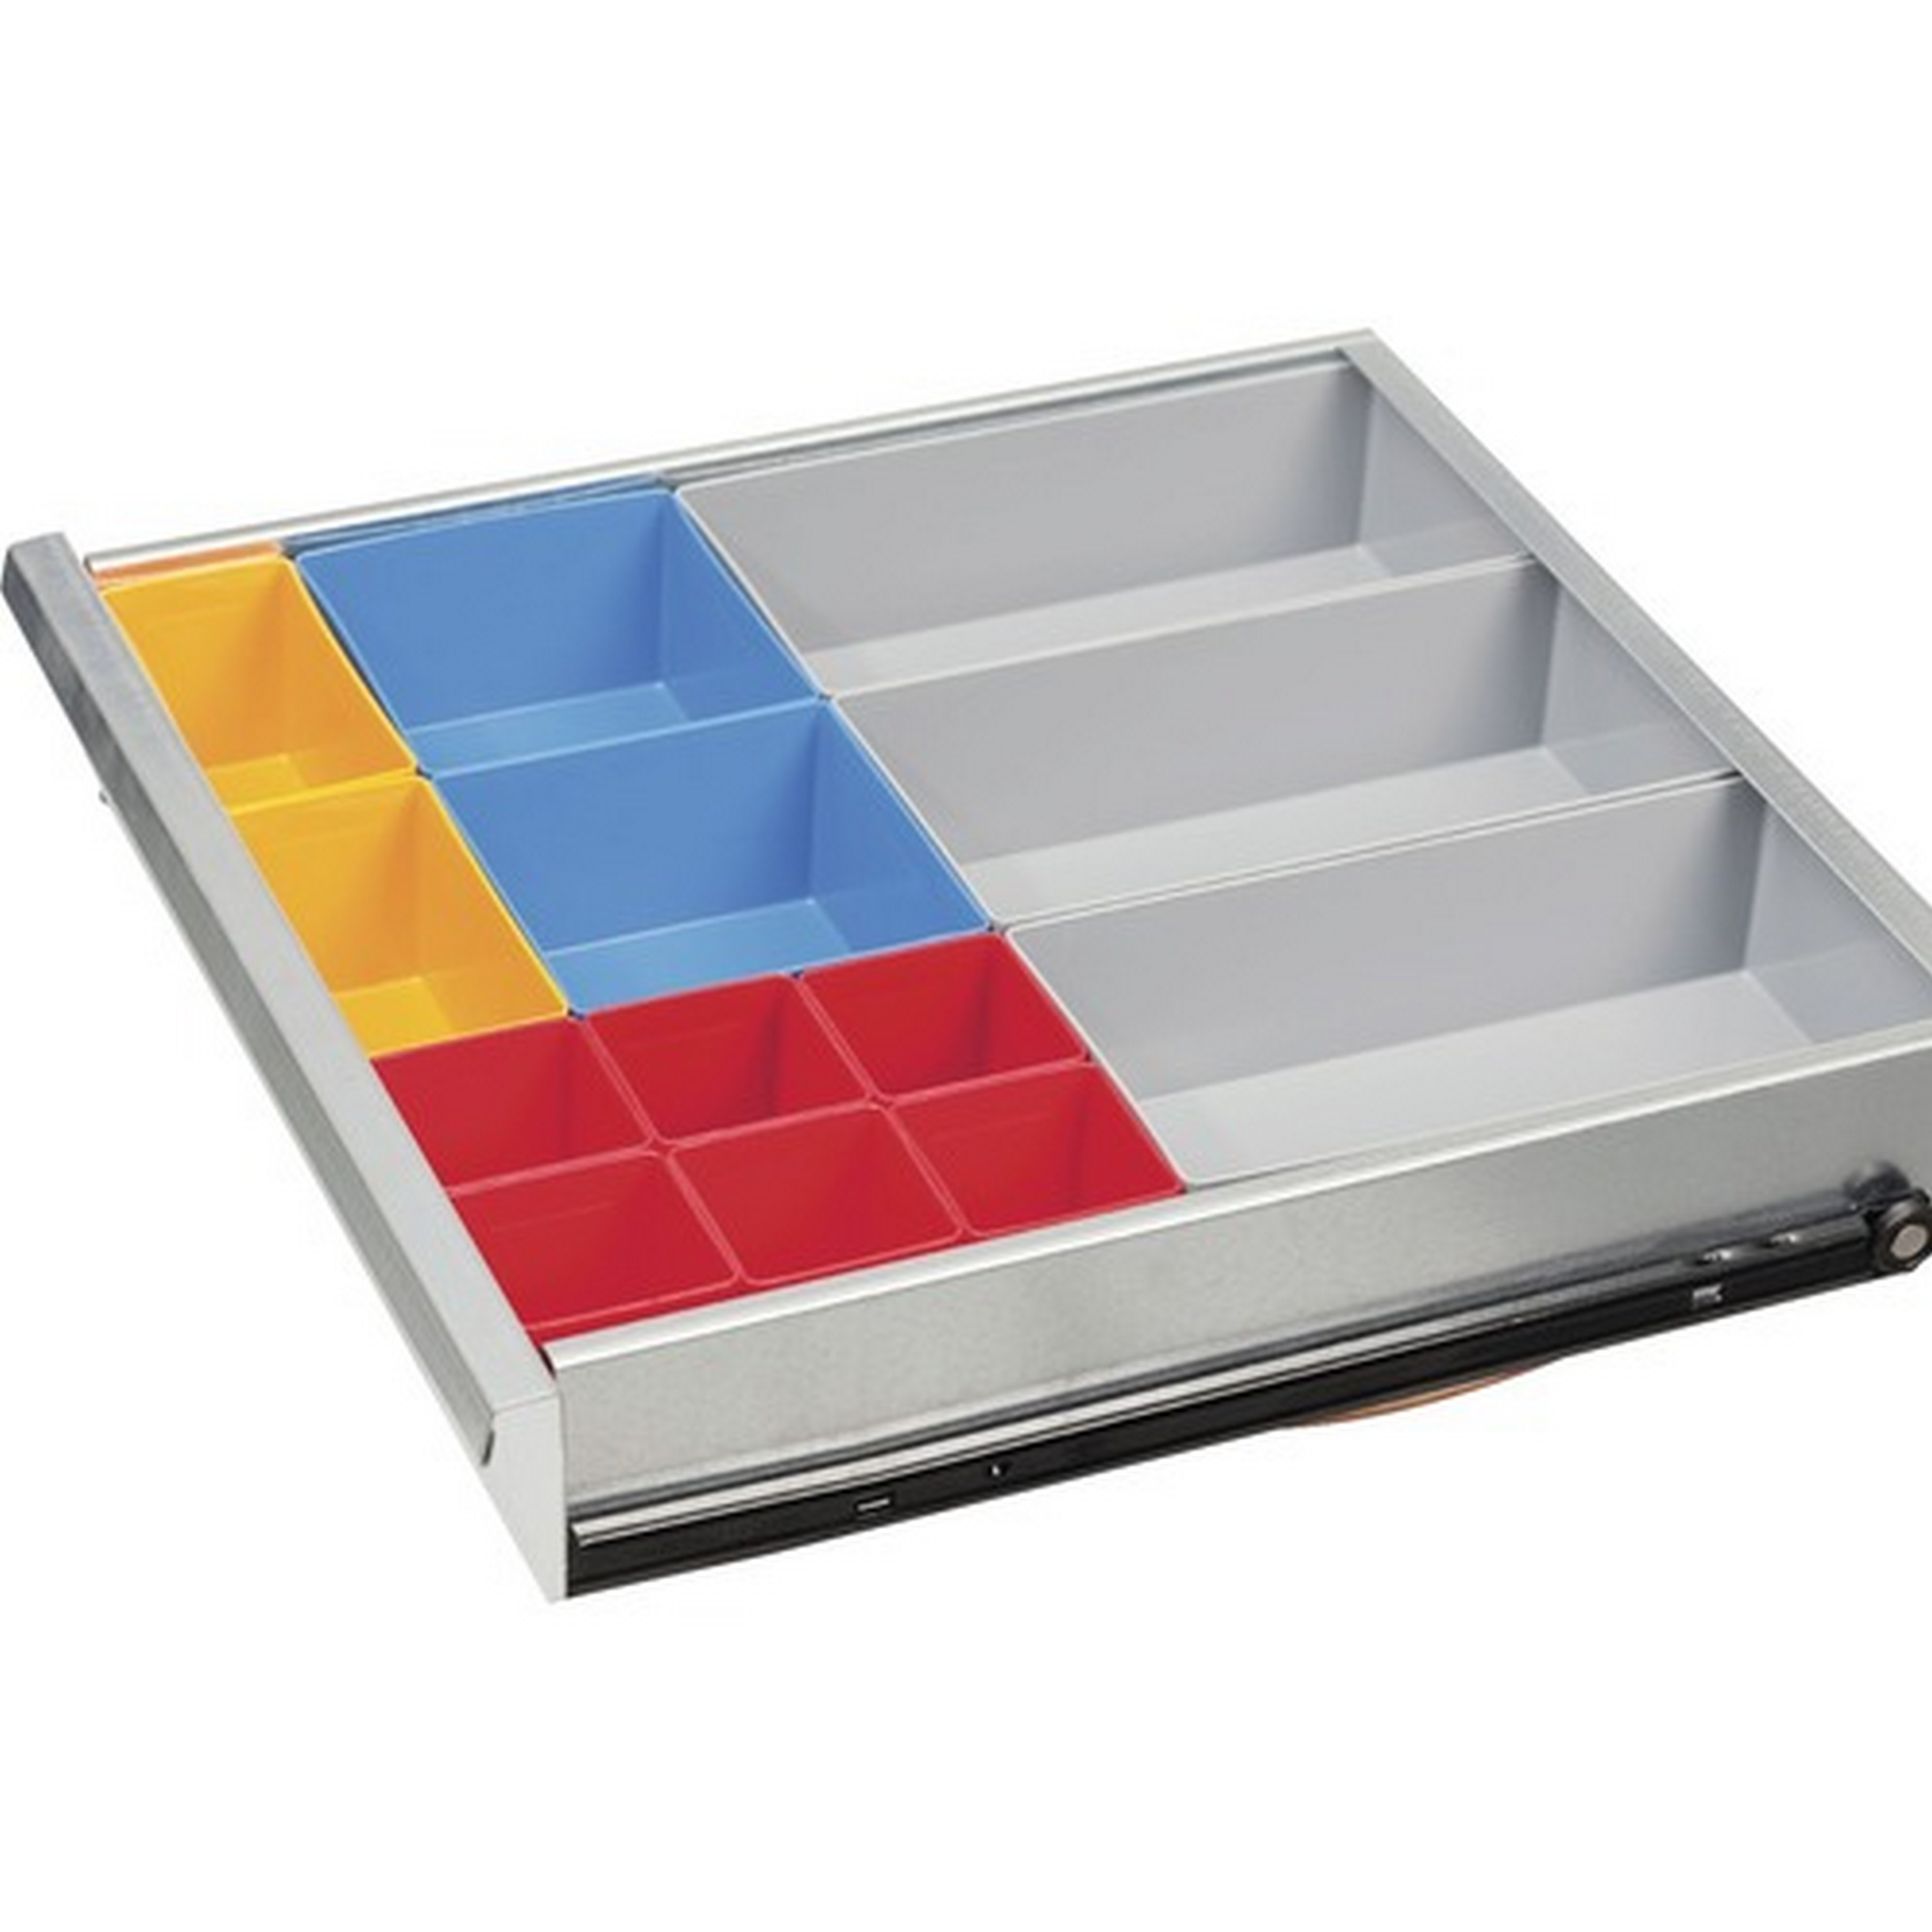 Universal-Schubladenunterteilungs-Set mit 13 Boxen, 33 x 37 x 7 cm + product picture